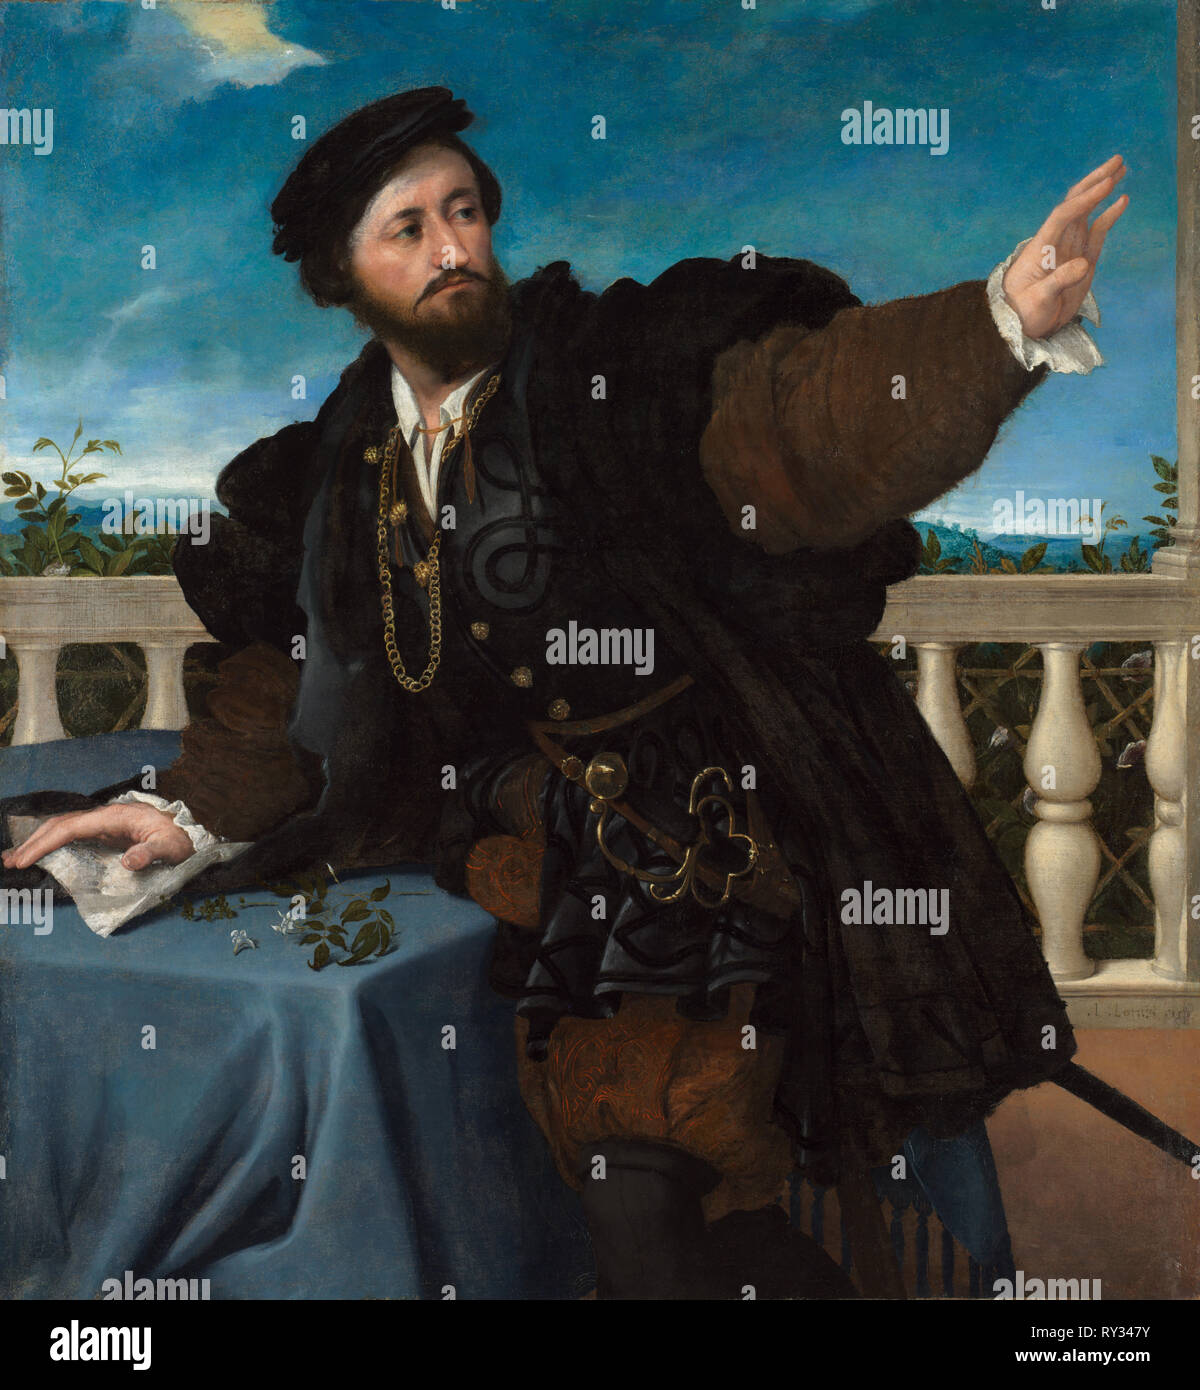 Portrait d'un homme, peut-être Girolamo Rosati, 1533-1534. Lorenzo Lotto (italien, 1480-1556). Huile sur toile, 135,9 x 128 encadré : x 8,6 cm (53 1/2 x 50 3/8 x 3 3/8 in.) ; 108,2 x 100,5 sans cadre : cm (42 5/8 x 39 9/16 in Banque D'Images